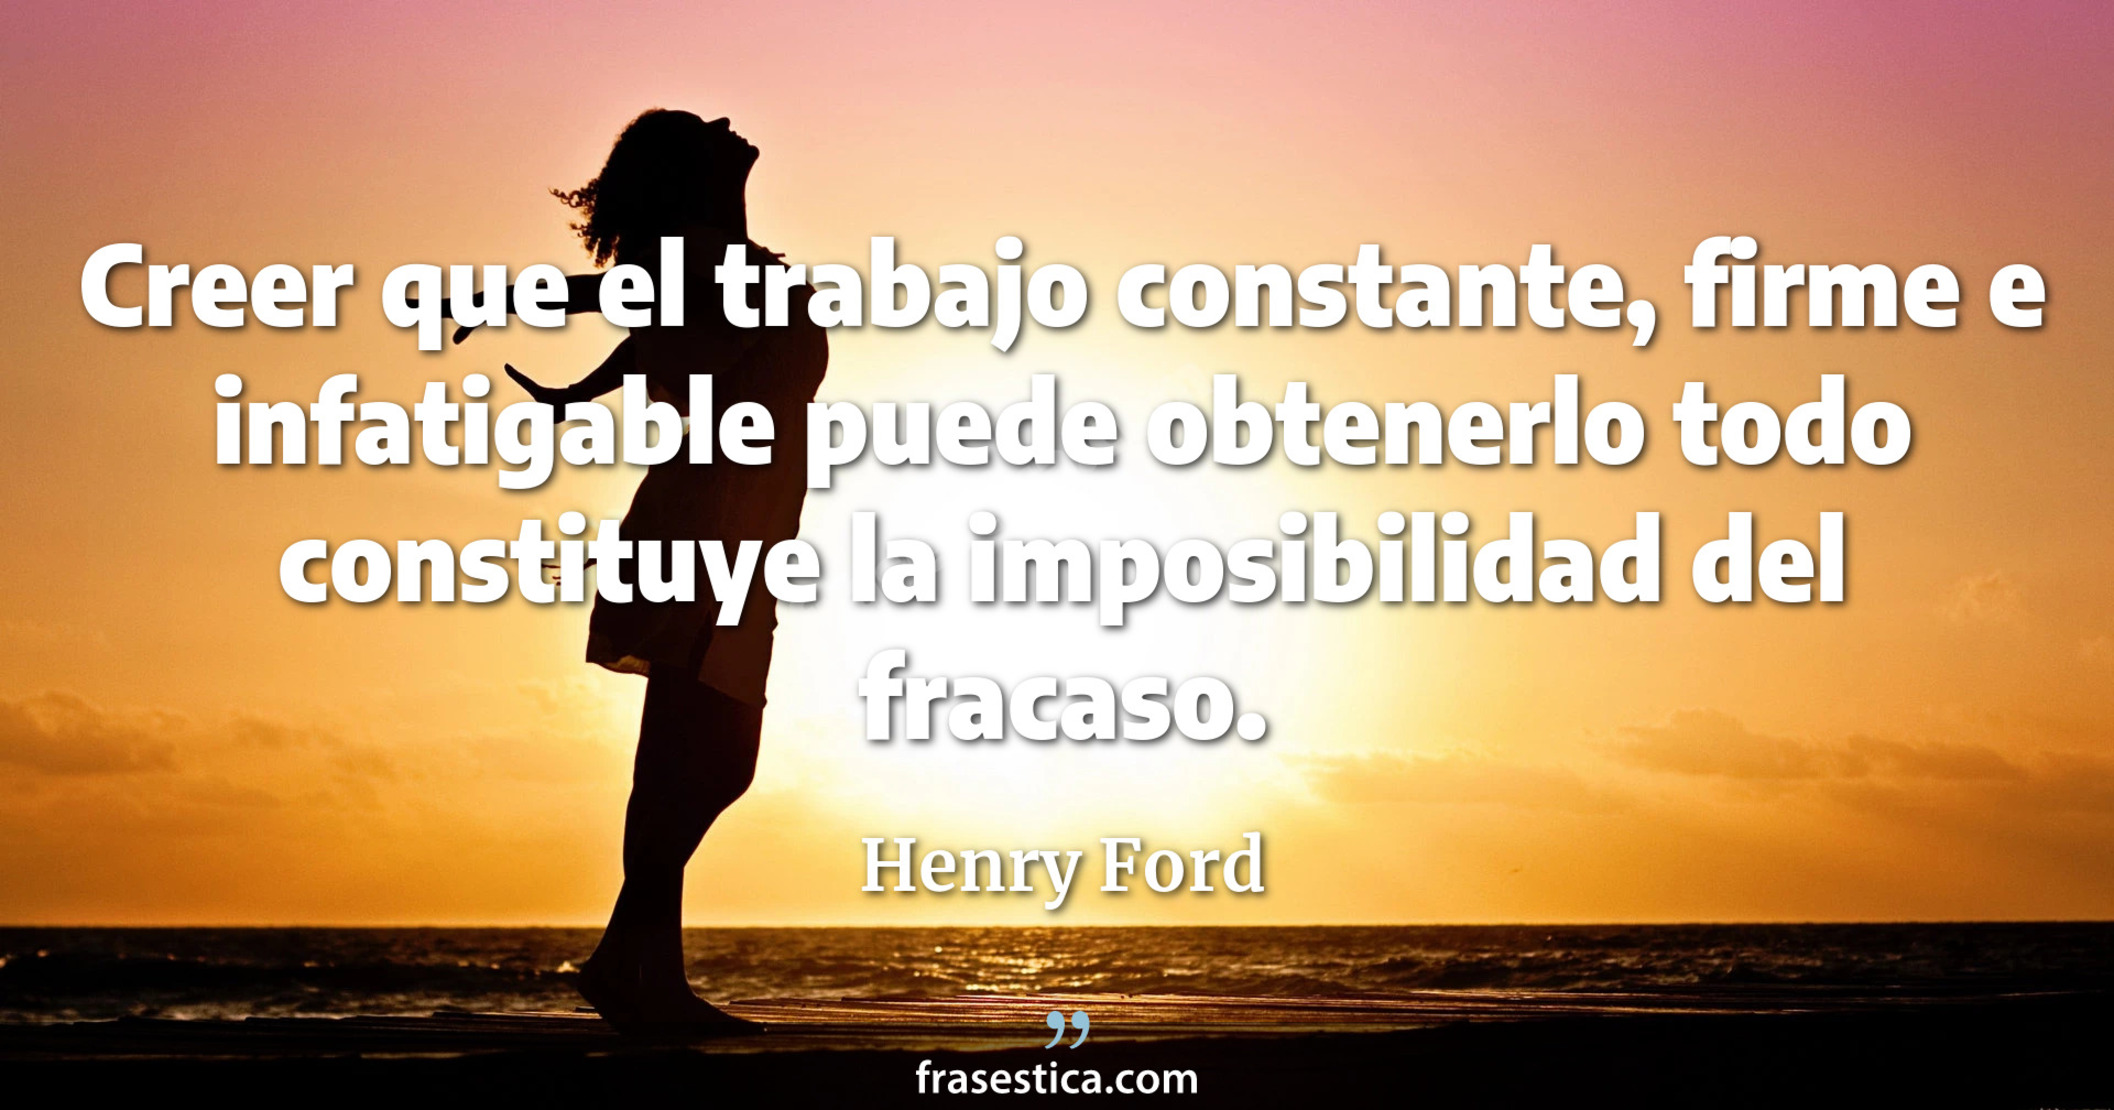 Creer que el trabajo constante, firme e infatigable puede obtenerlo todo constituye la imposibilidad del fracaso. - Henry Ford